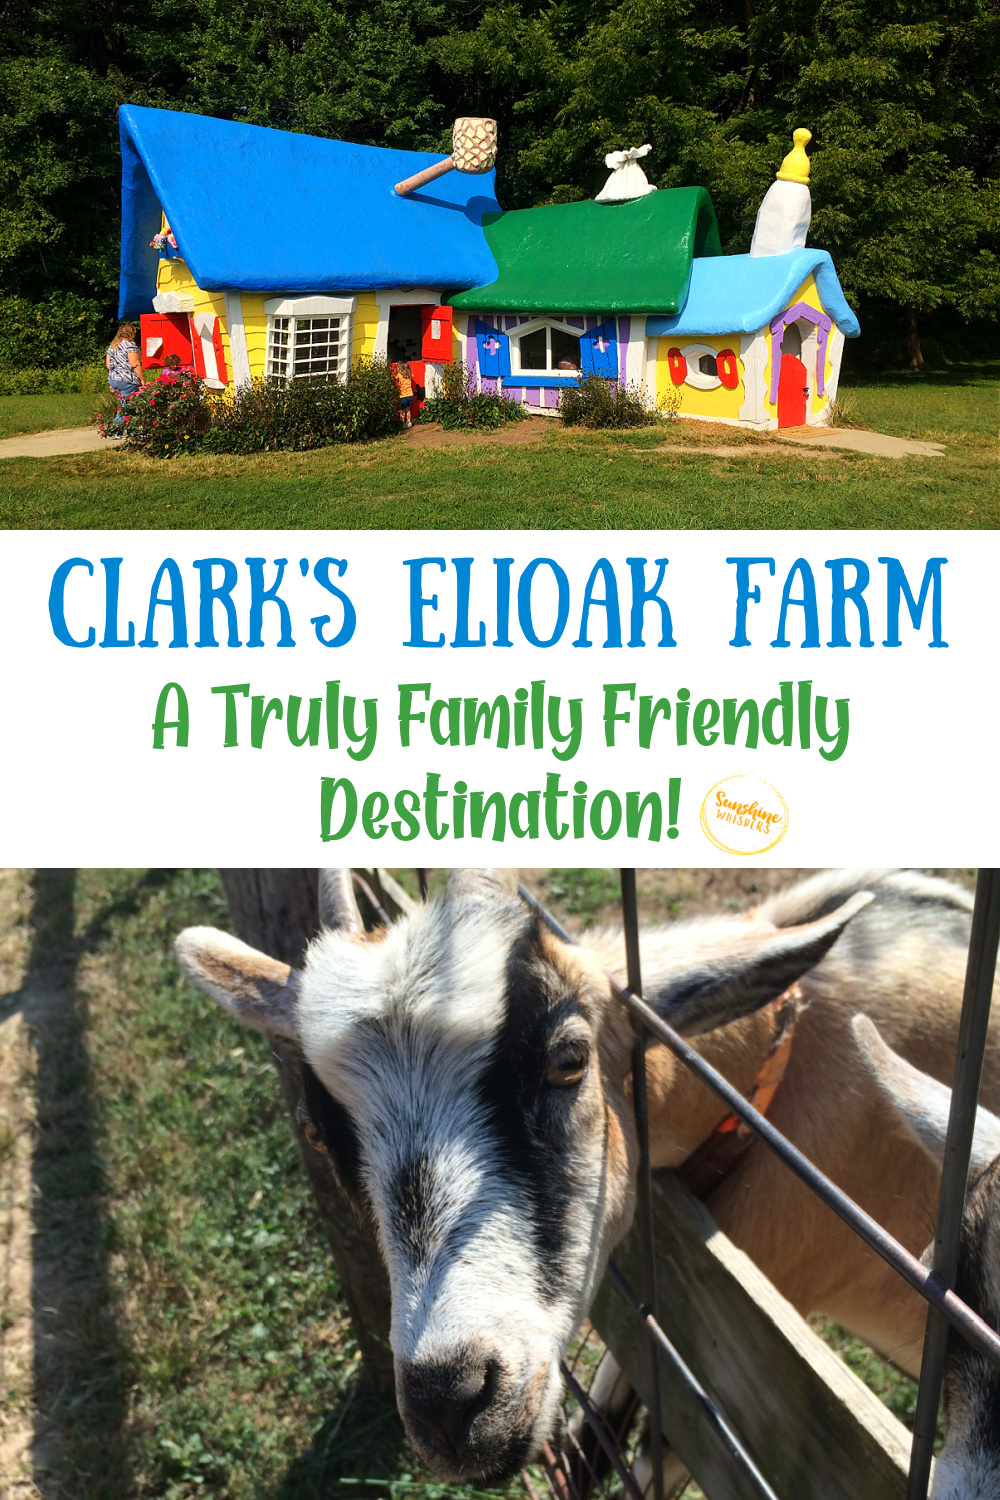 Clark's Elioak Farm